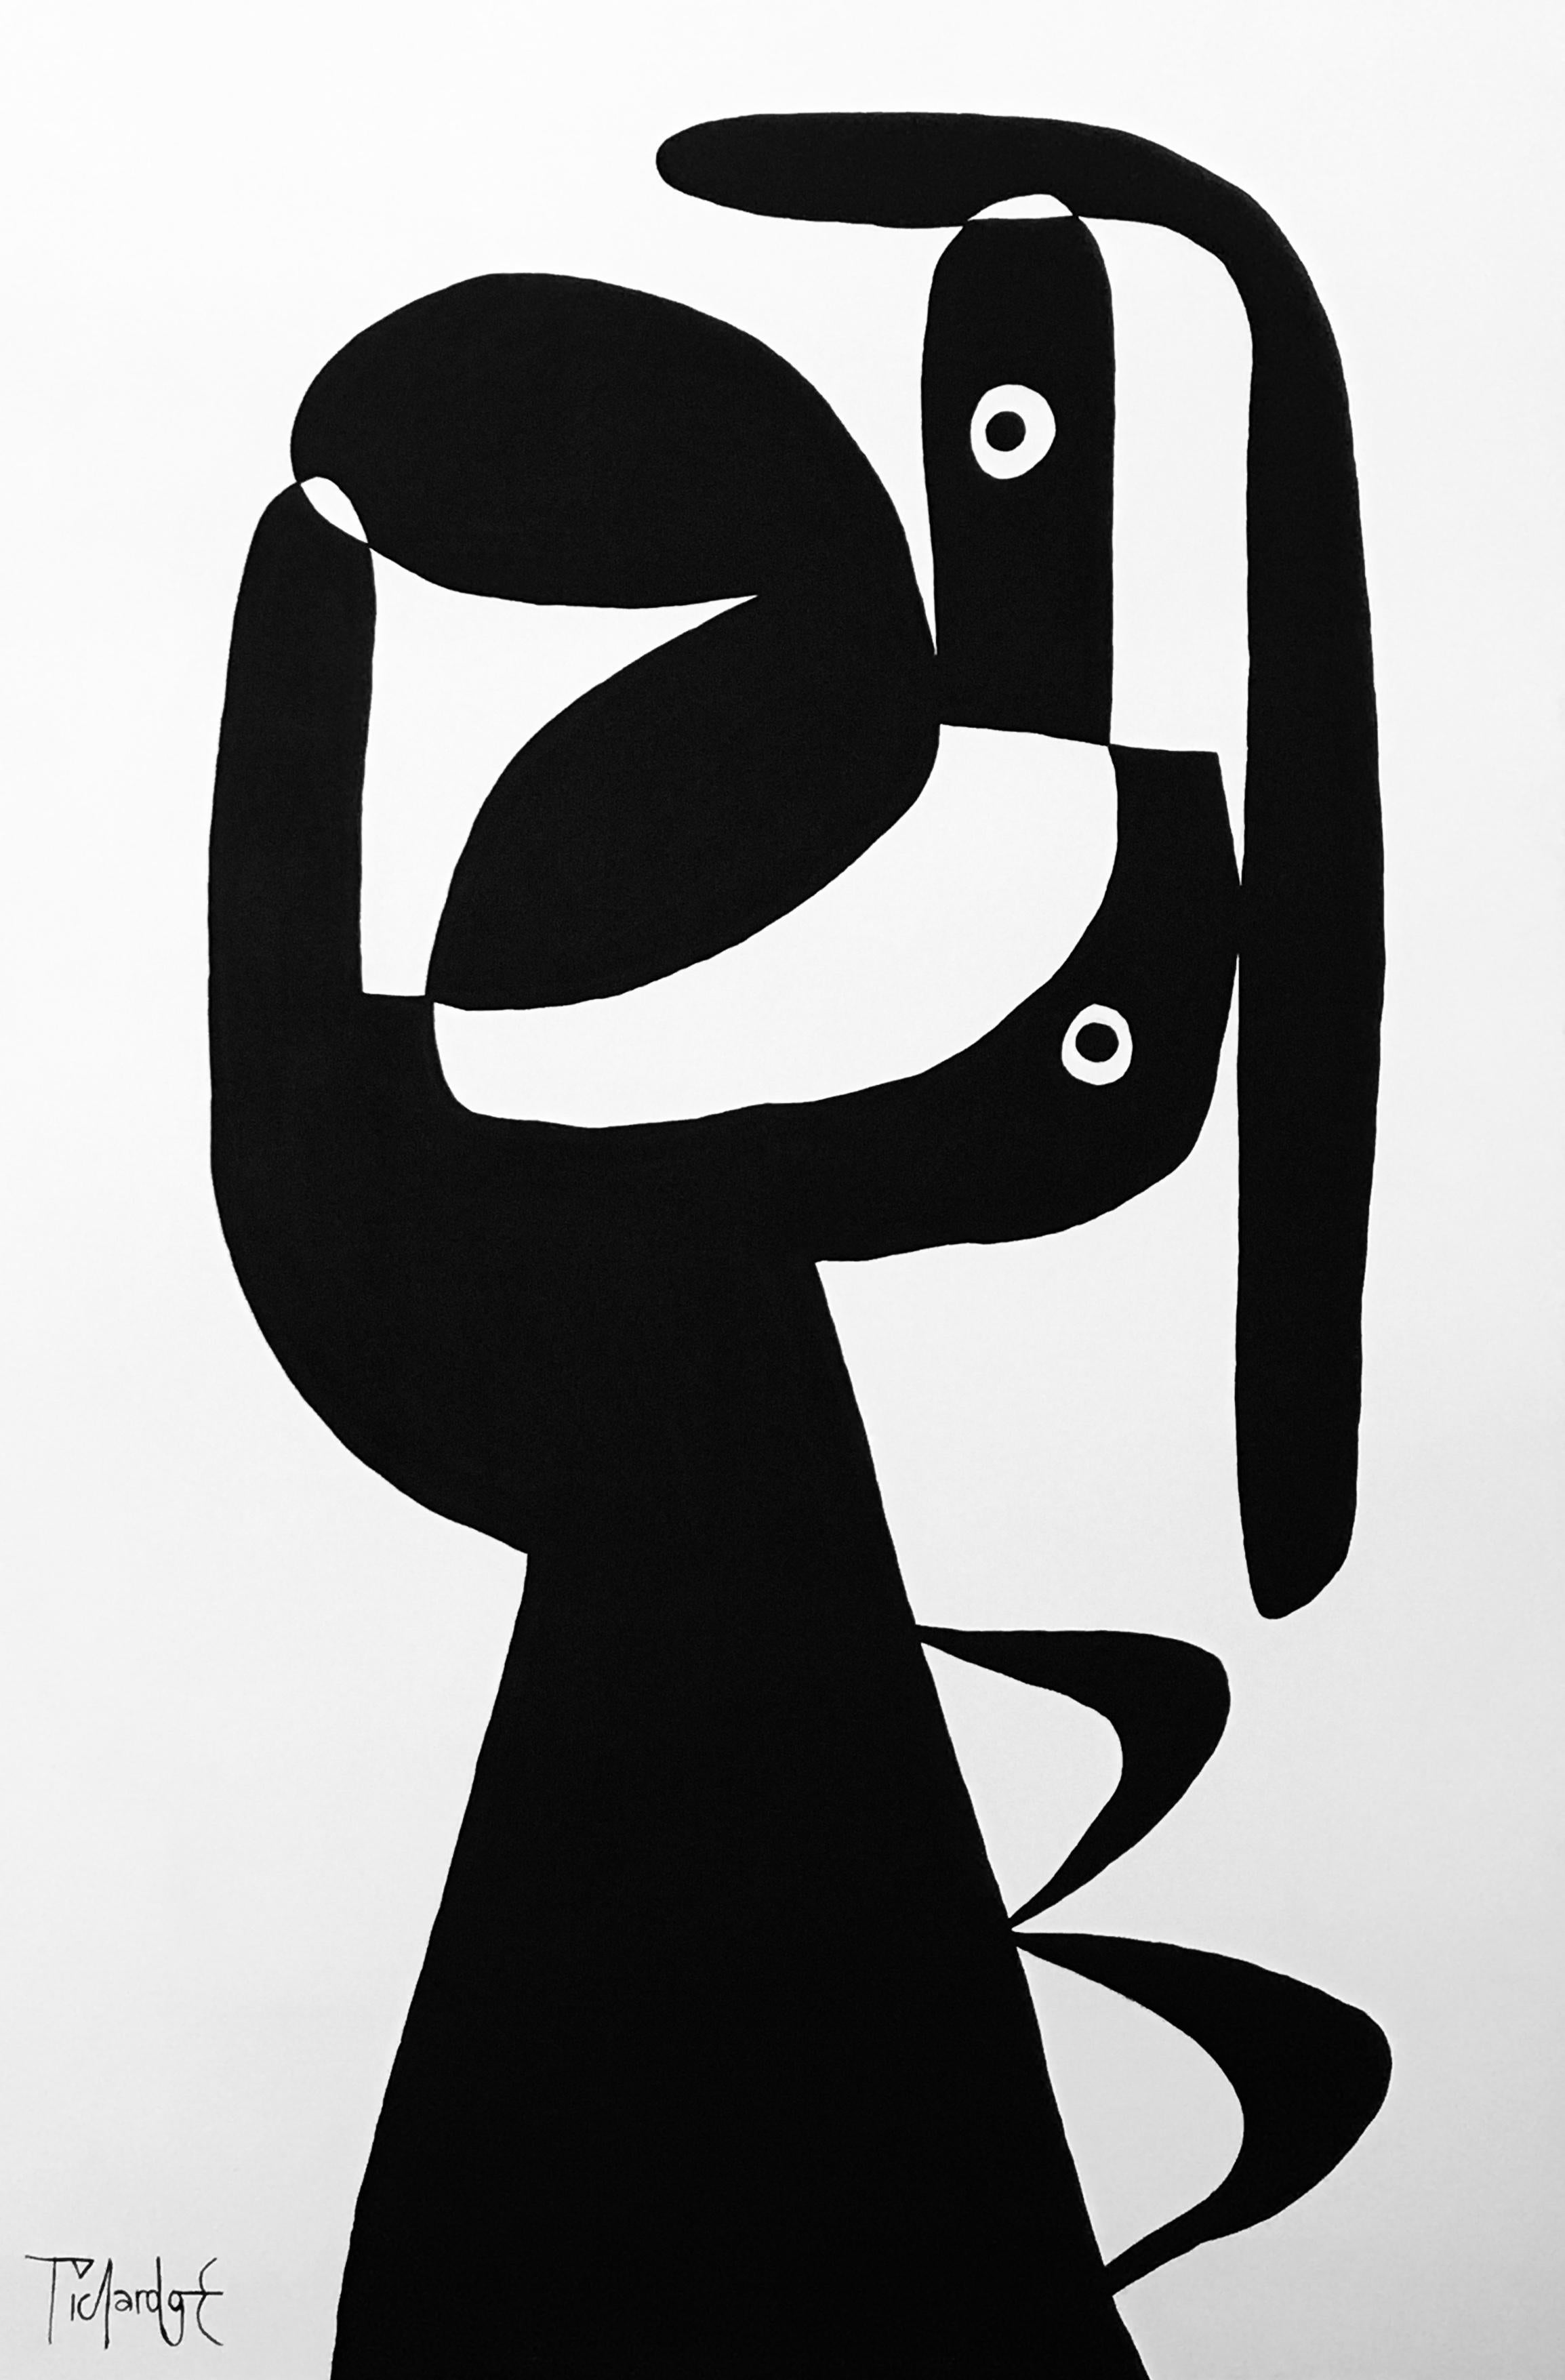 Cuerpo Escueto II and V
Contemporary Mexican Art, Abstract Painting
Acrylic on canvas
Signed and dated 


About the artist
Enrique Pichardo (Mexico City, 1973) graduated from Escuela Nacional de Pintura, Escultura y Grabado (ENPEG) “La Esmeralda”.